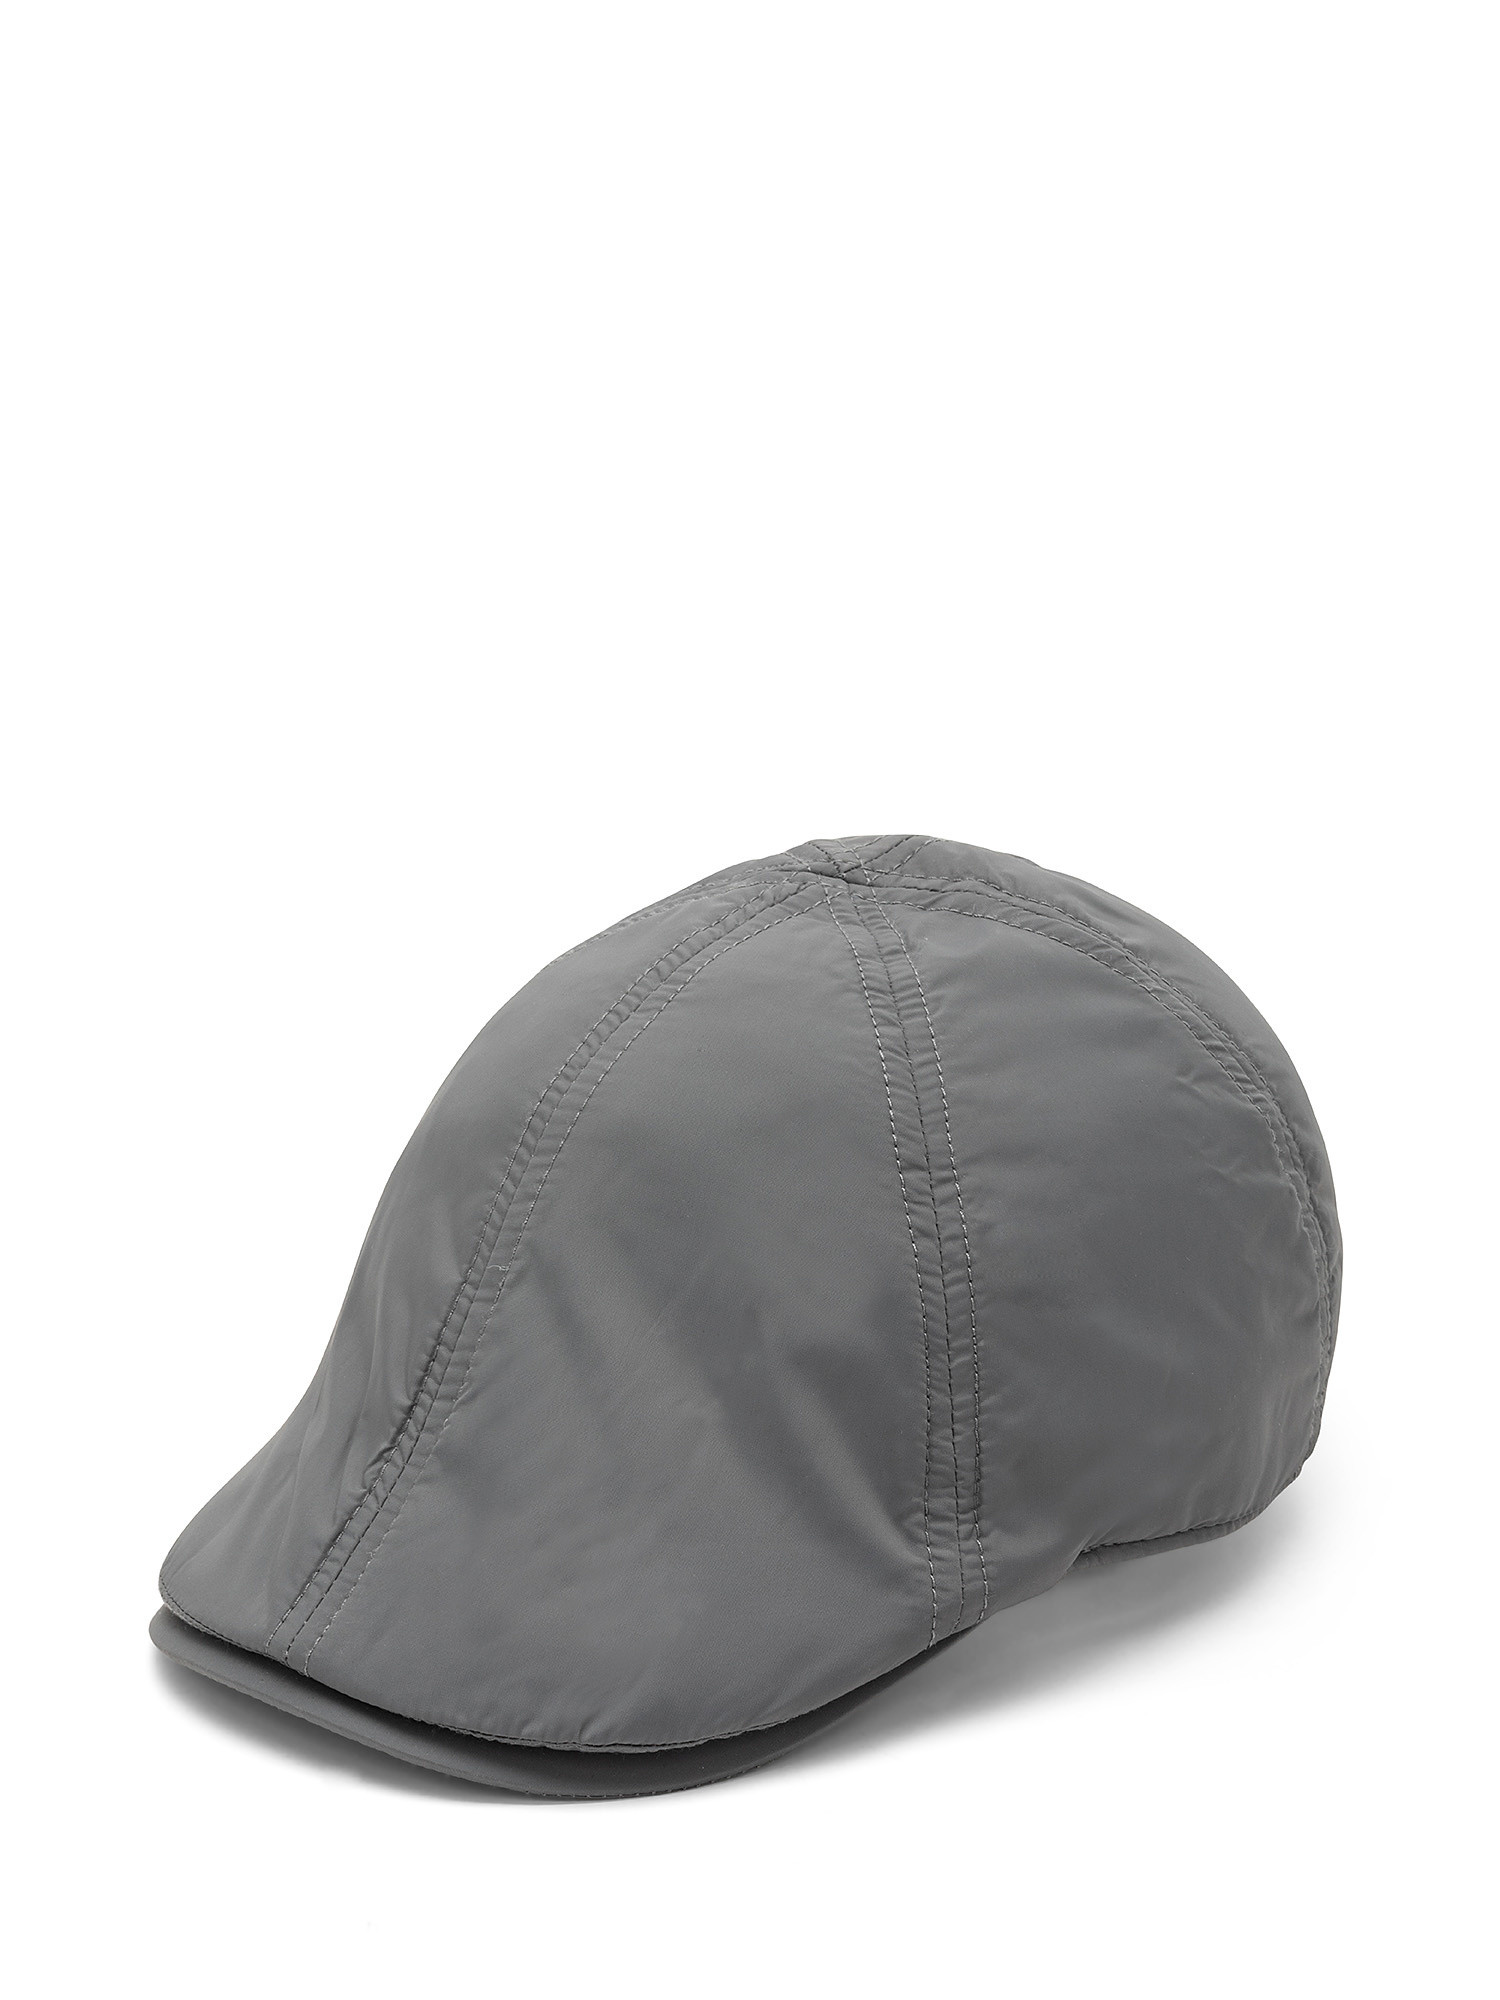 Nylon flat cap, Grey, large image number 0